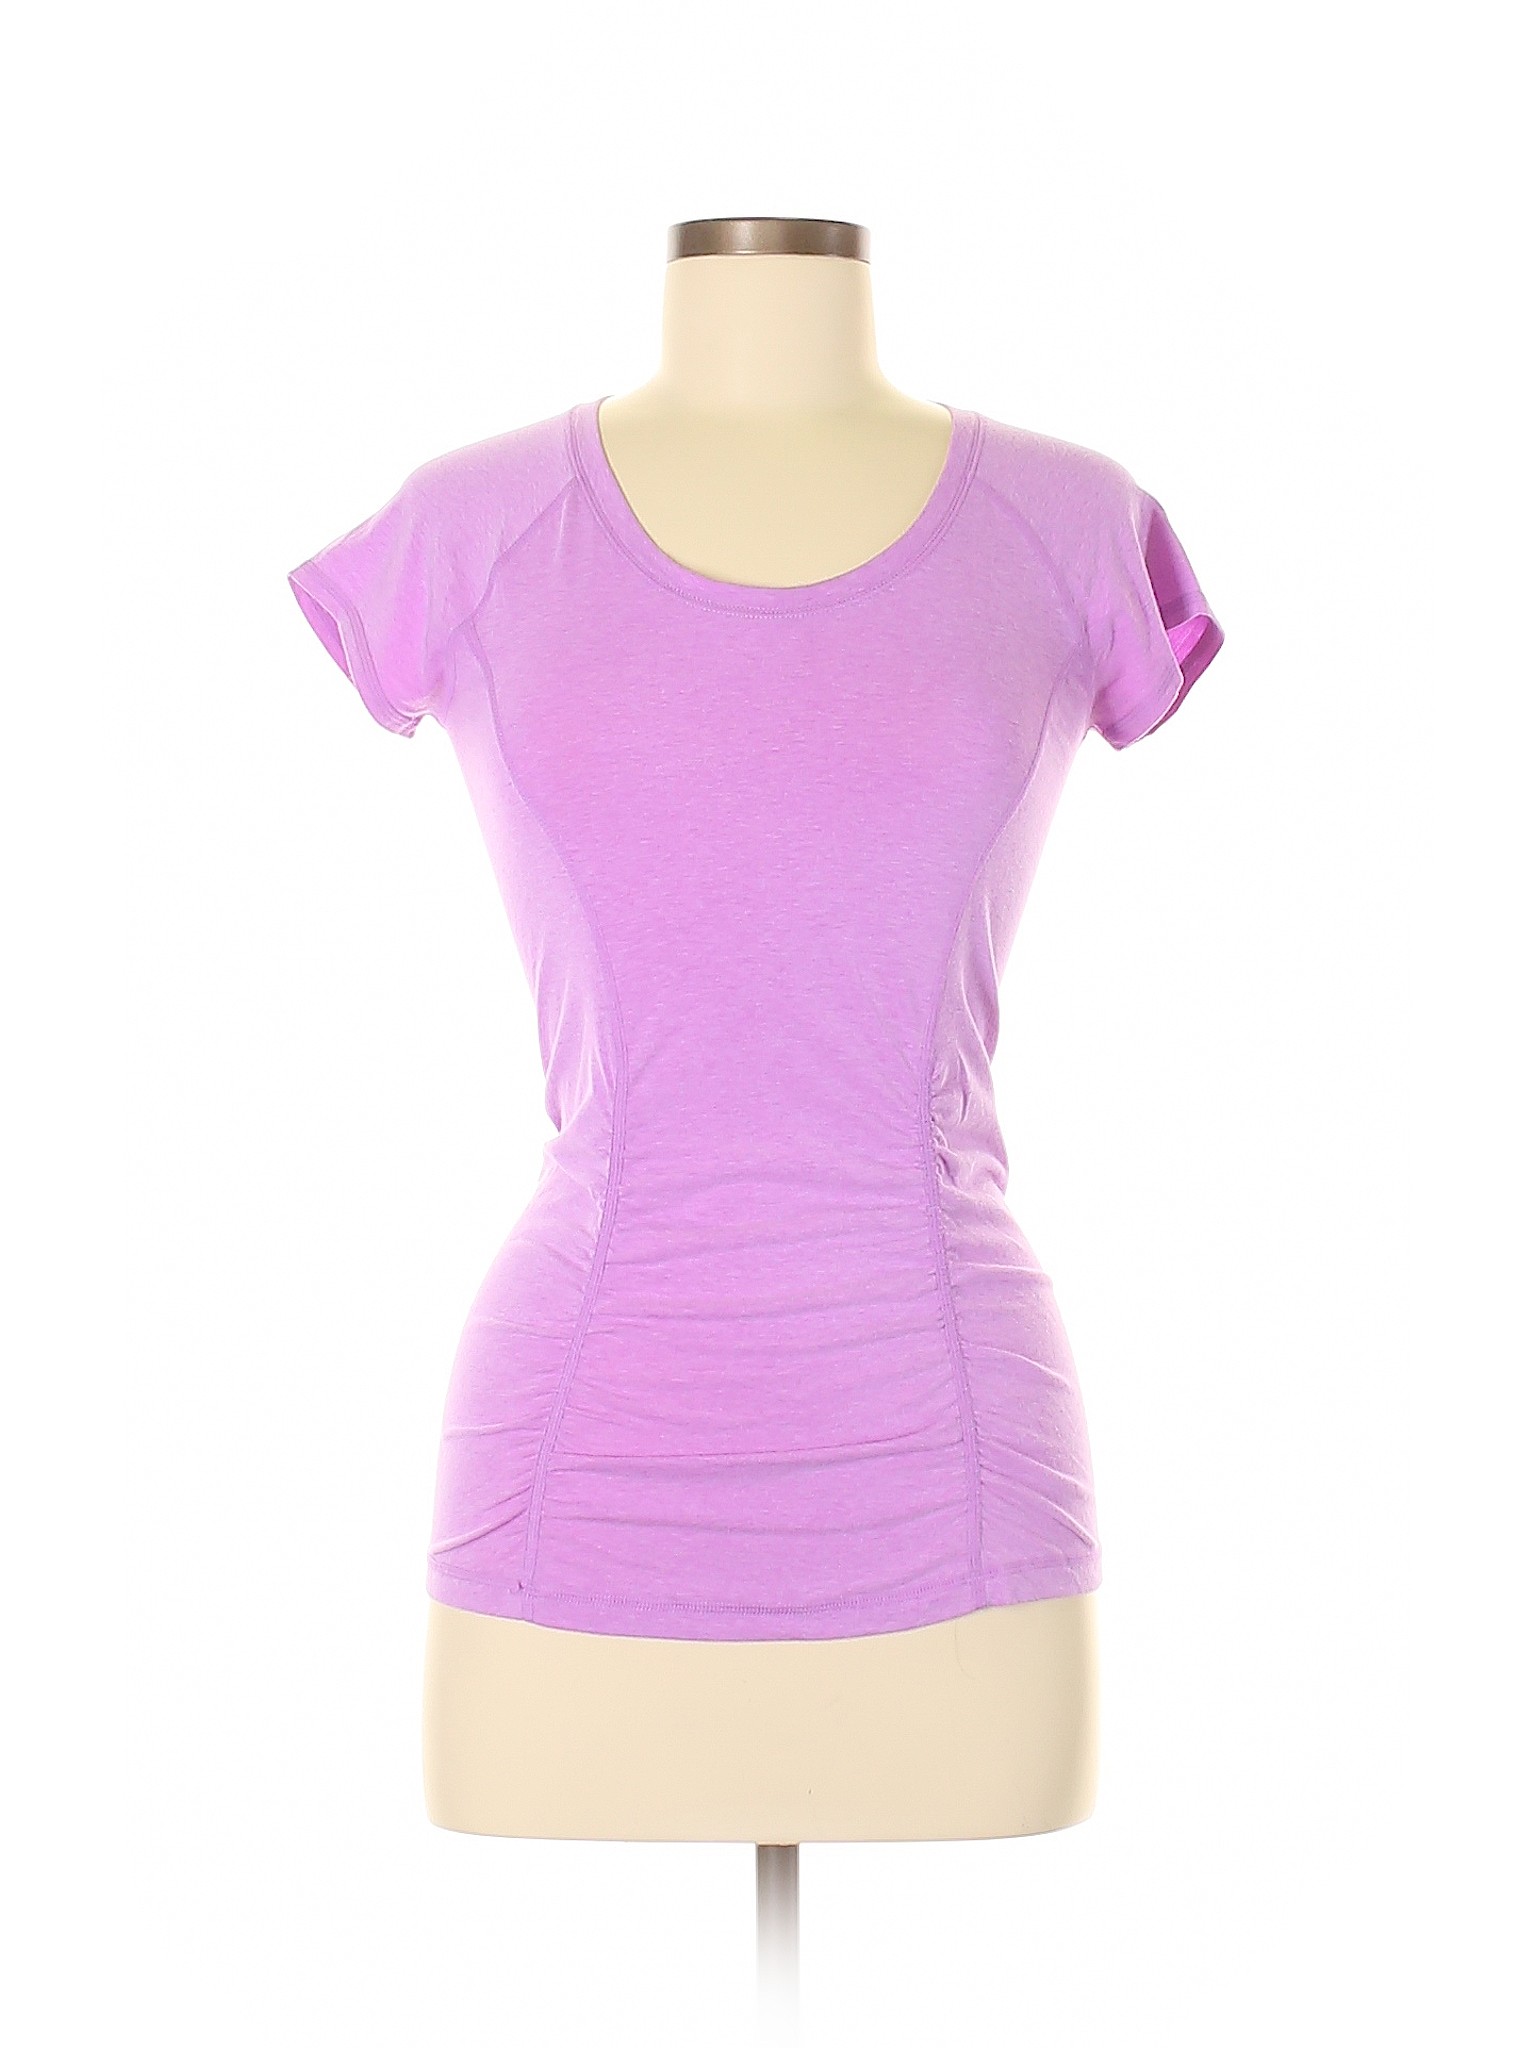 Details about Zella Women Purple Active T Shirt Sm Petite